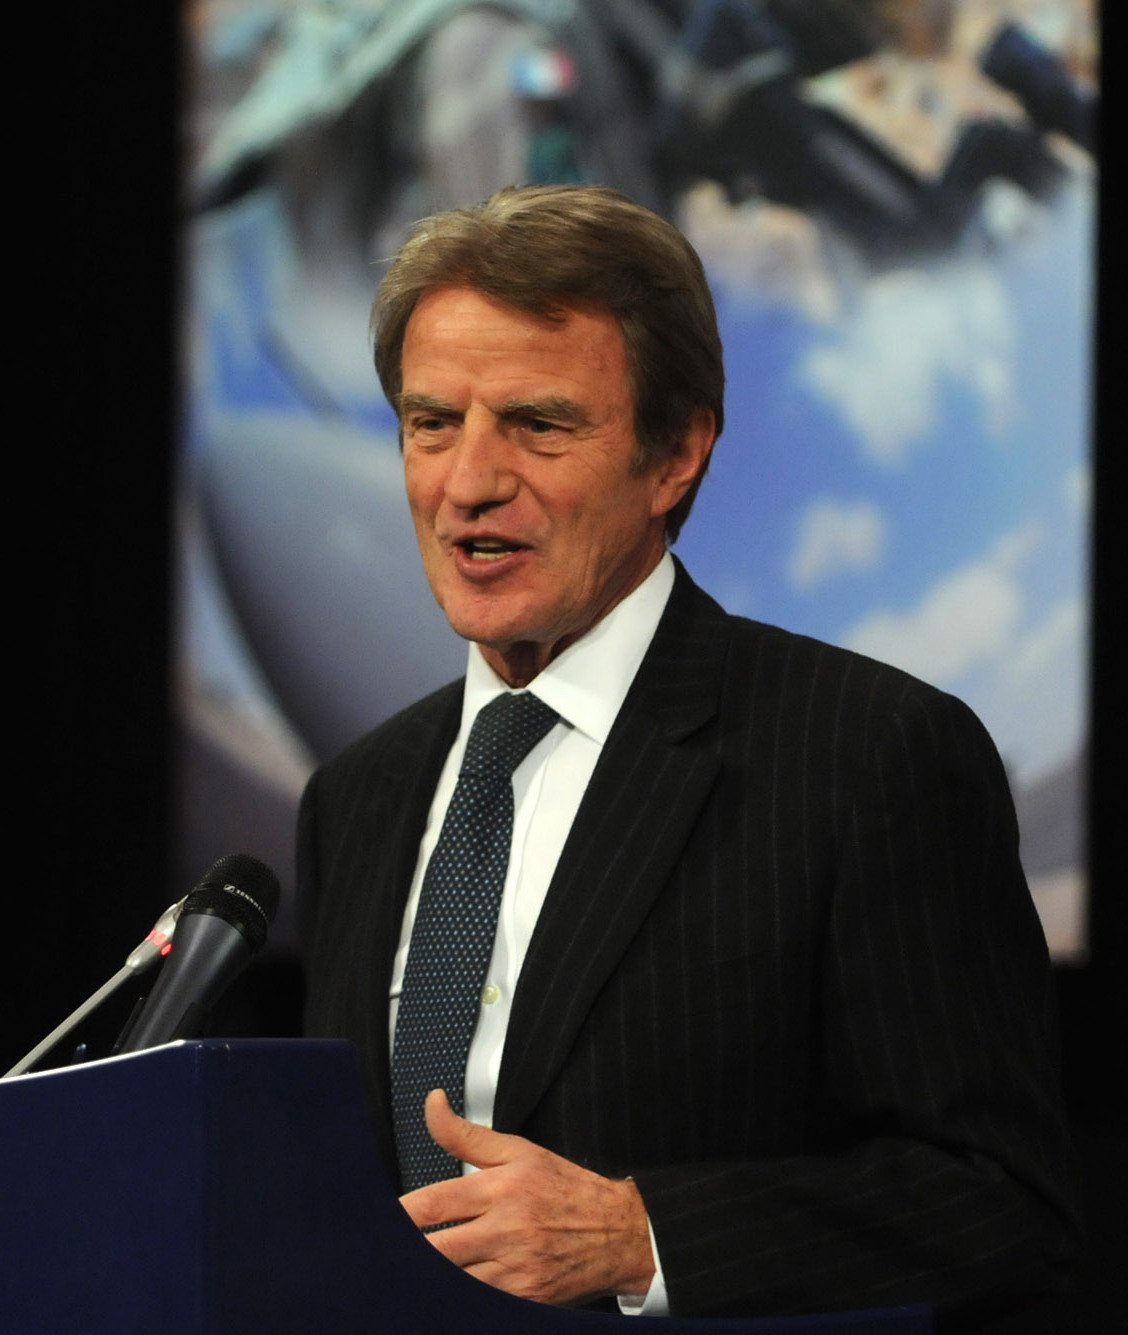 Bernard Kouchner Speaker